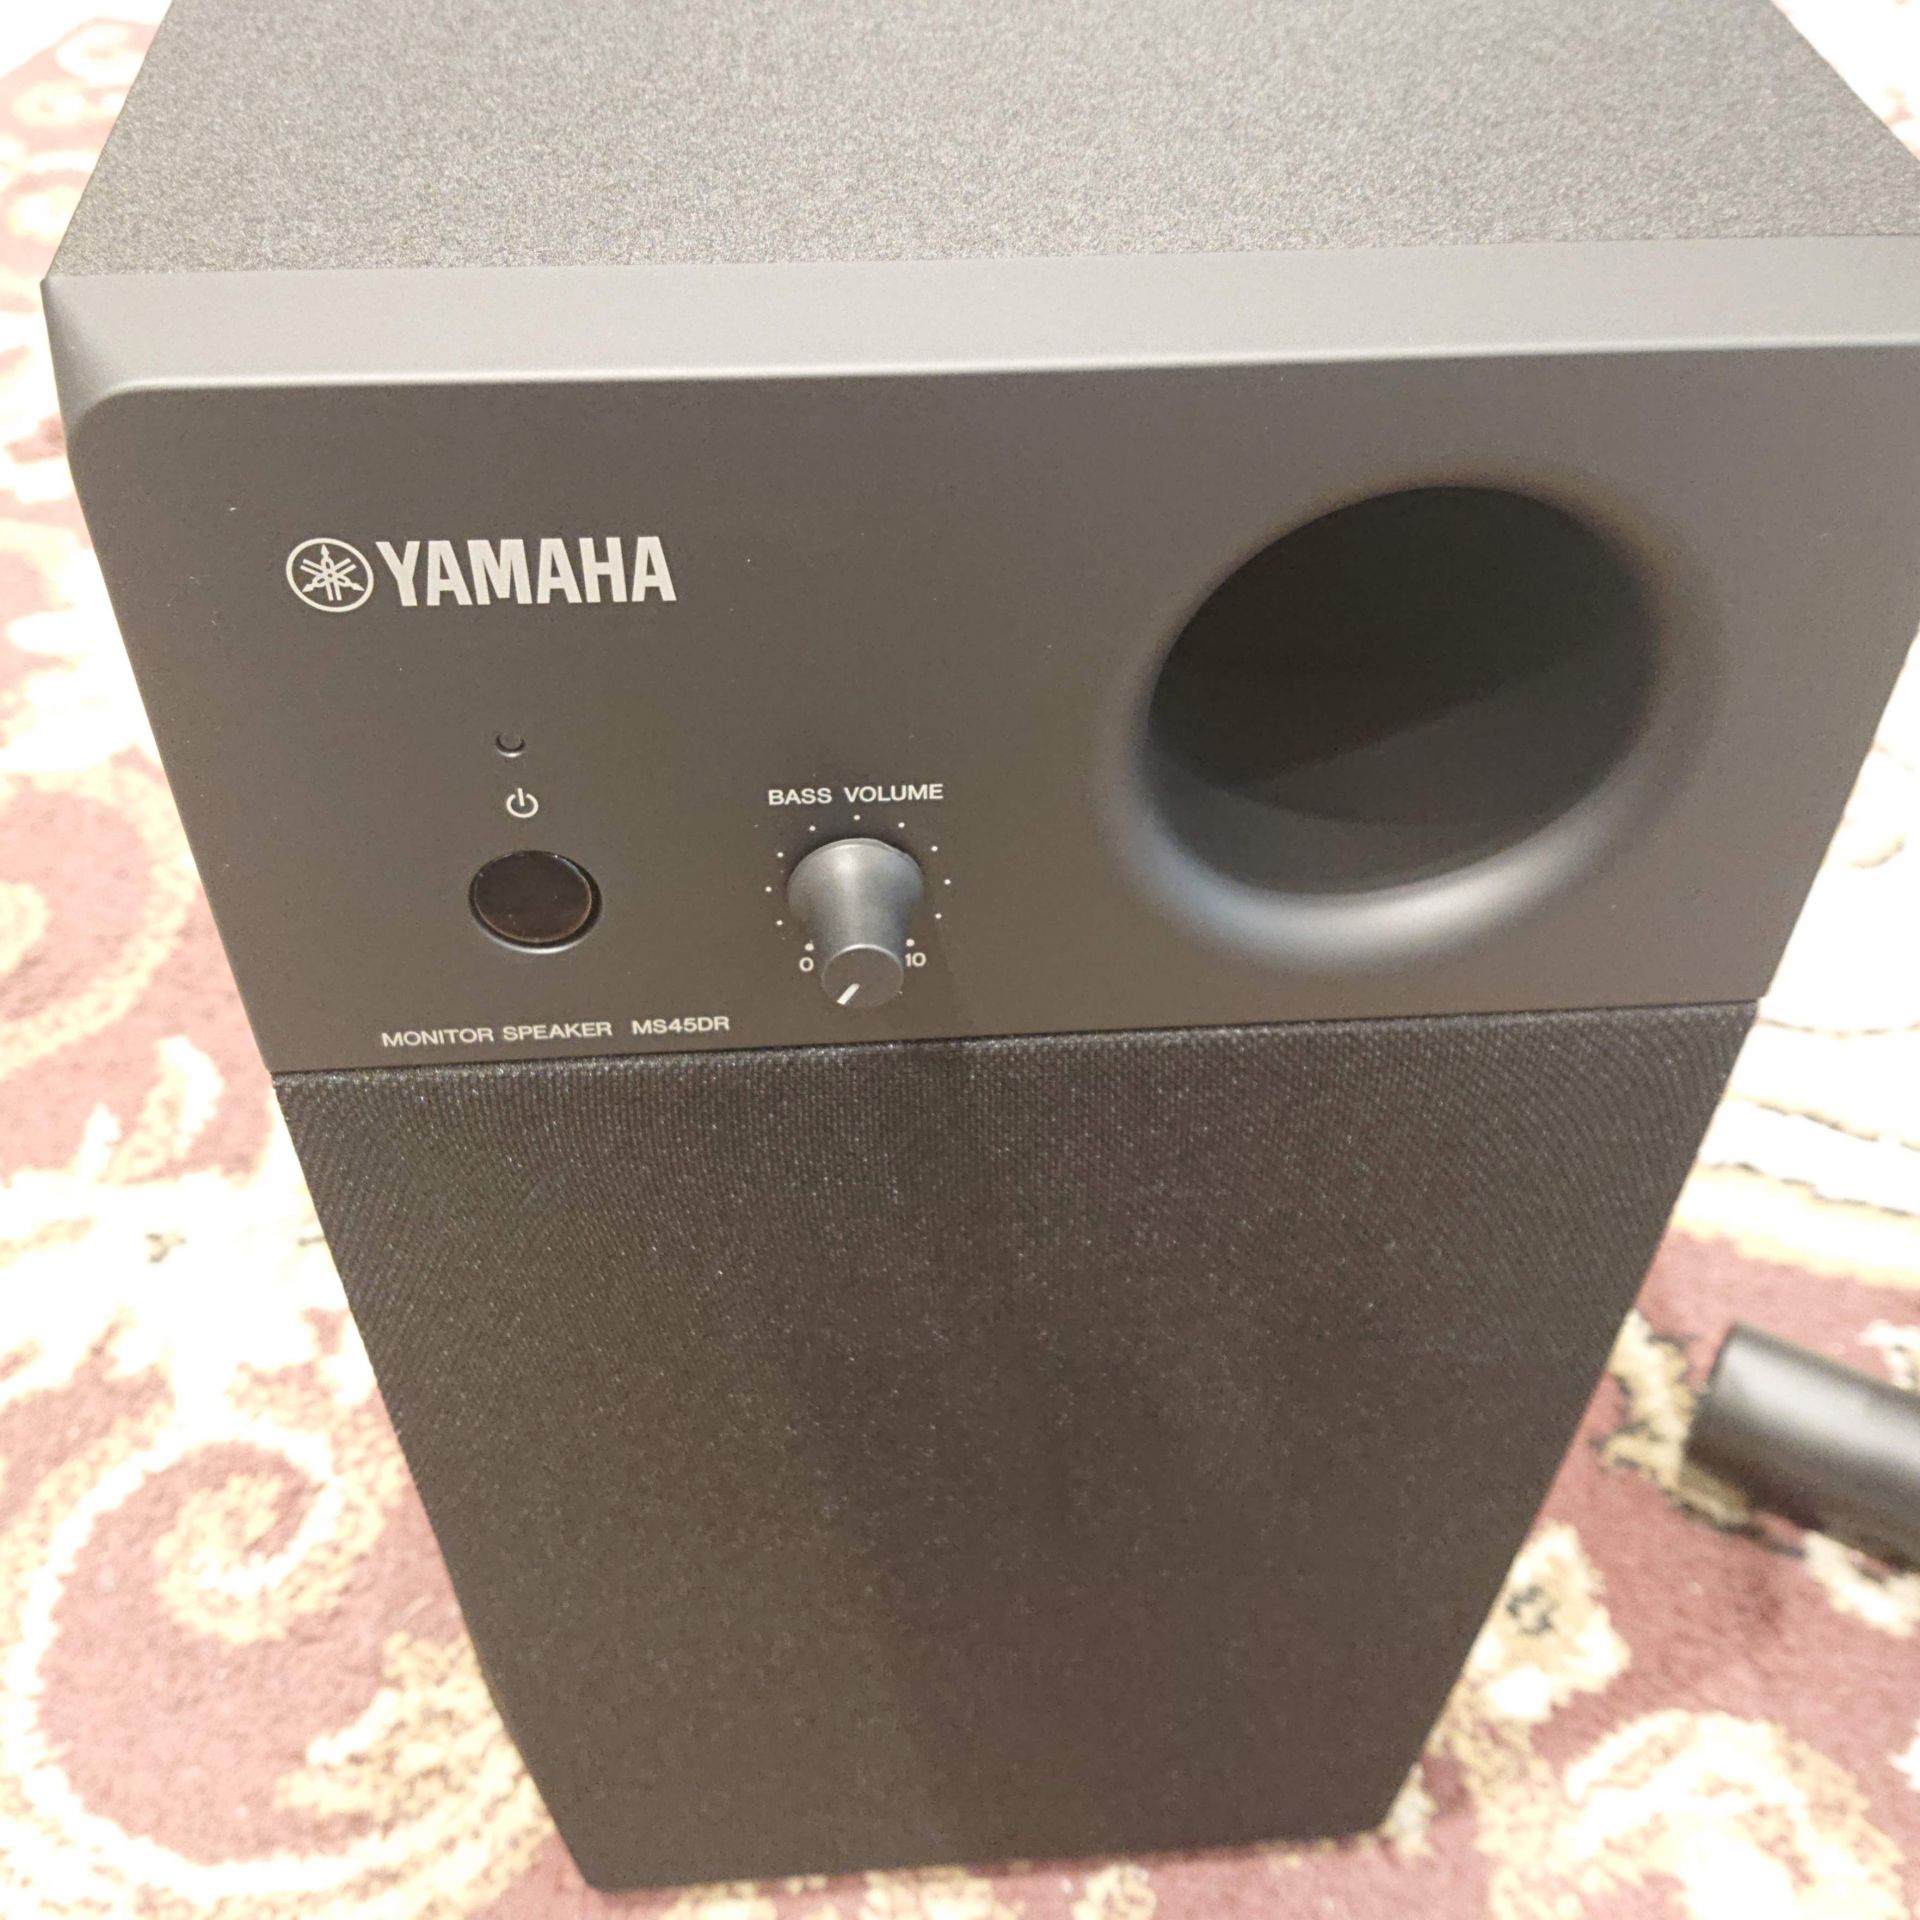 モニタースピーカー】-YAMAHA-電子ドラム用2.1chモニターシステム 